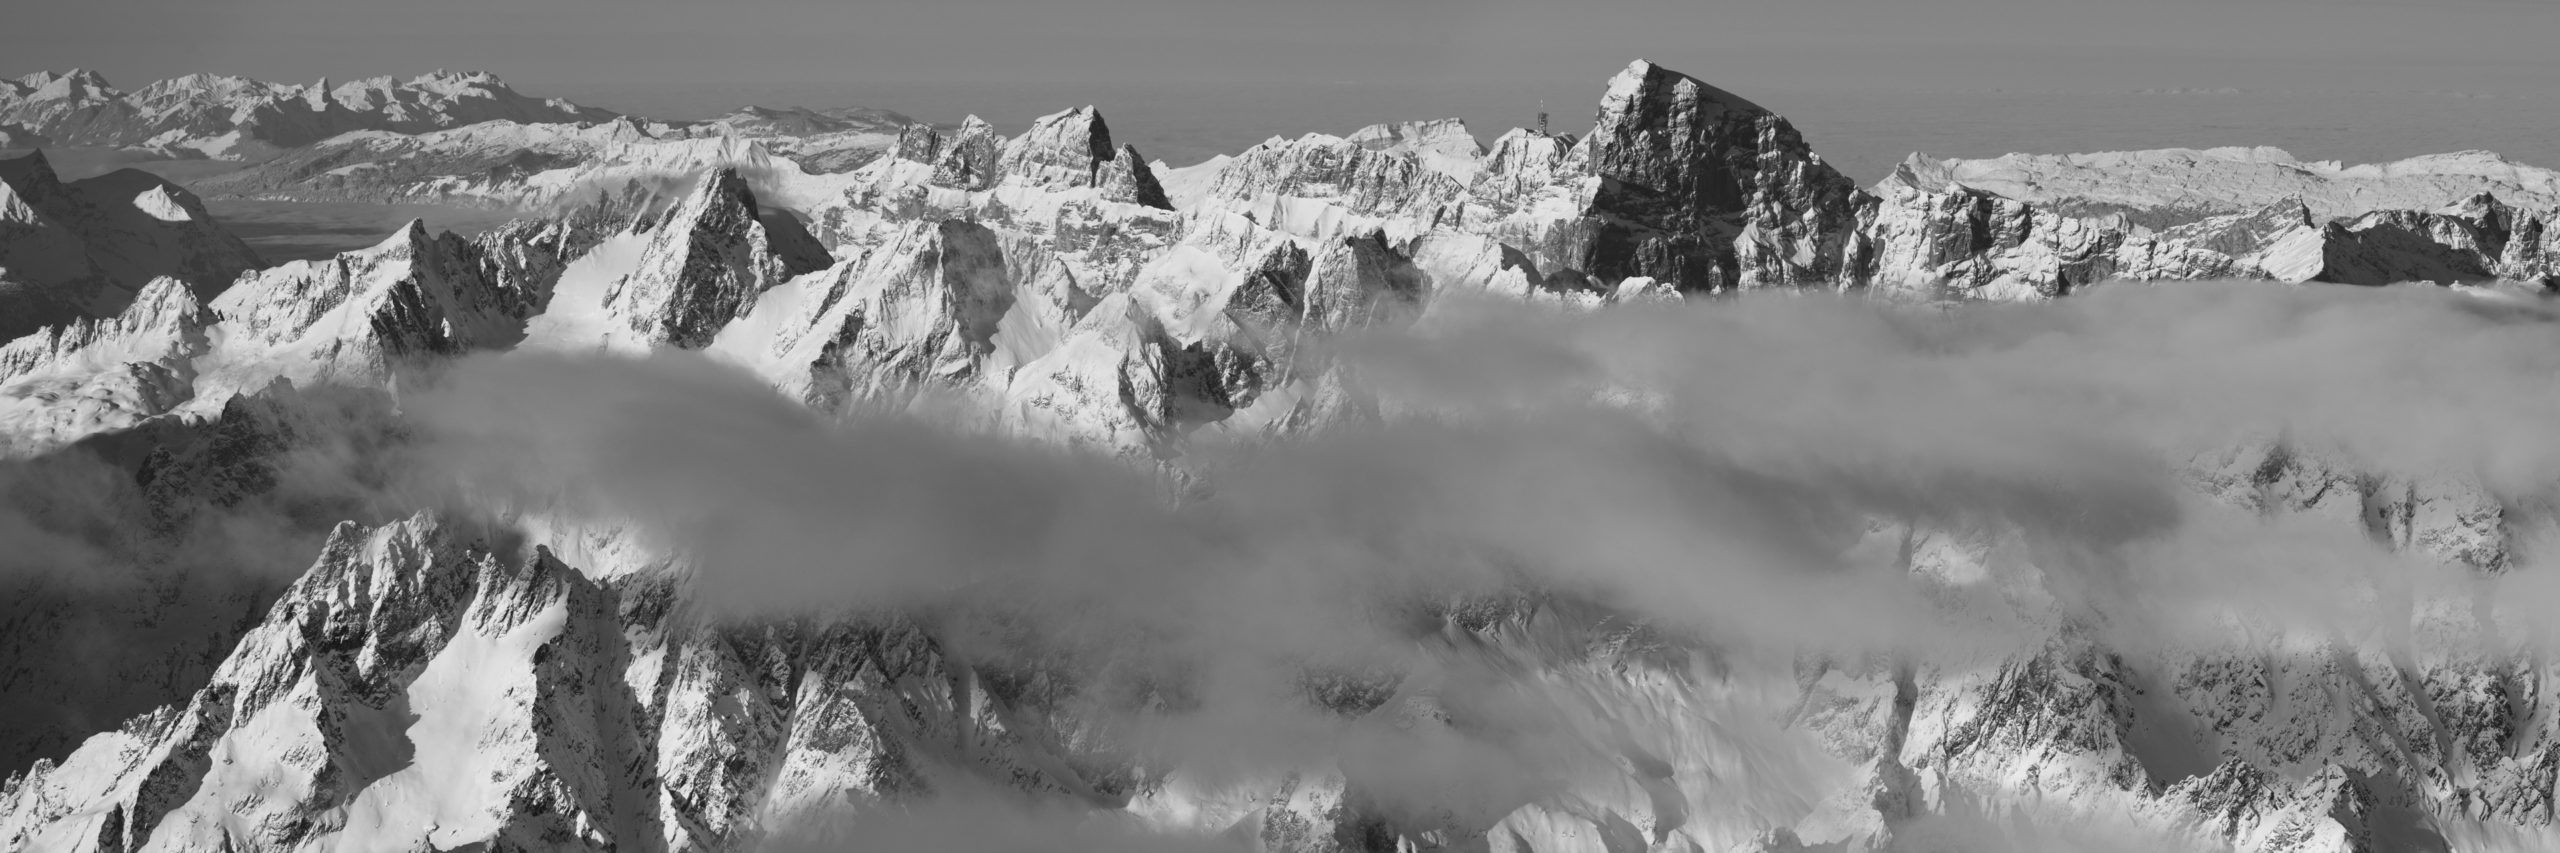 Schwarz-Weiss-Fotografie des Titlis - Panoramablick auf den aus dem Nebel auftauchenden Titlisgipfel